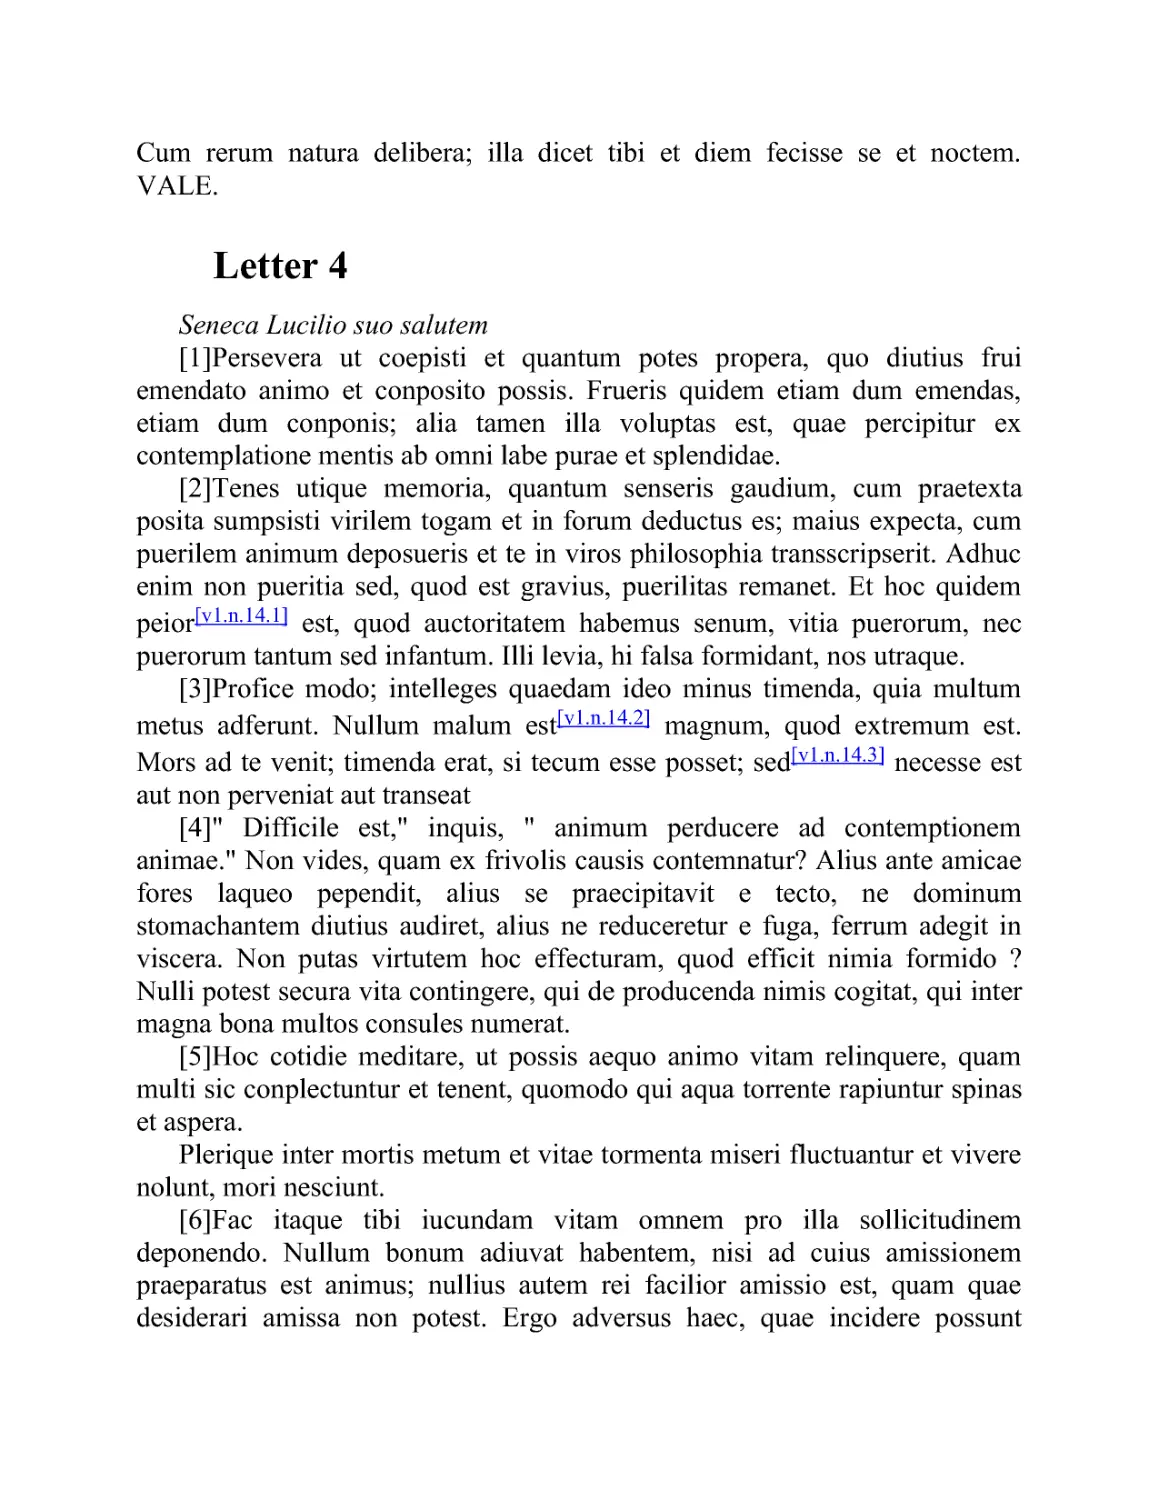 Letter 4